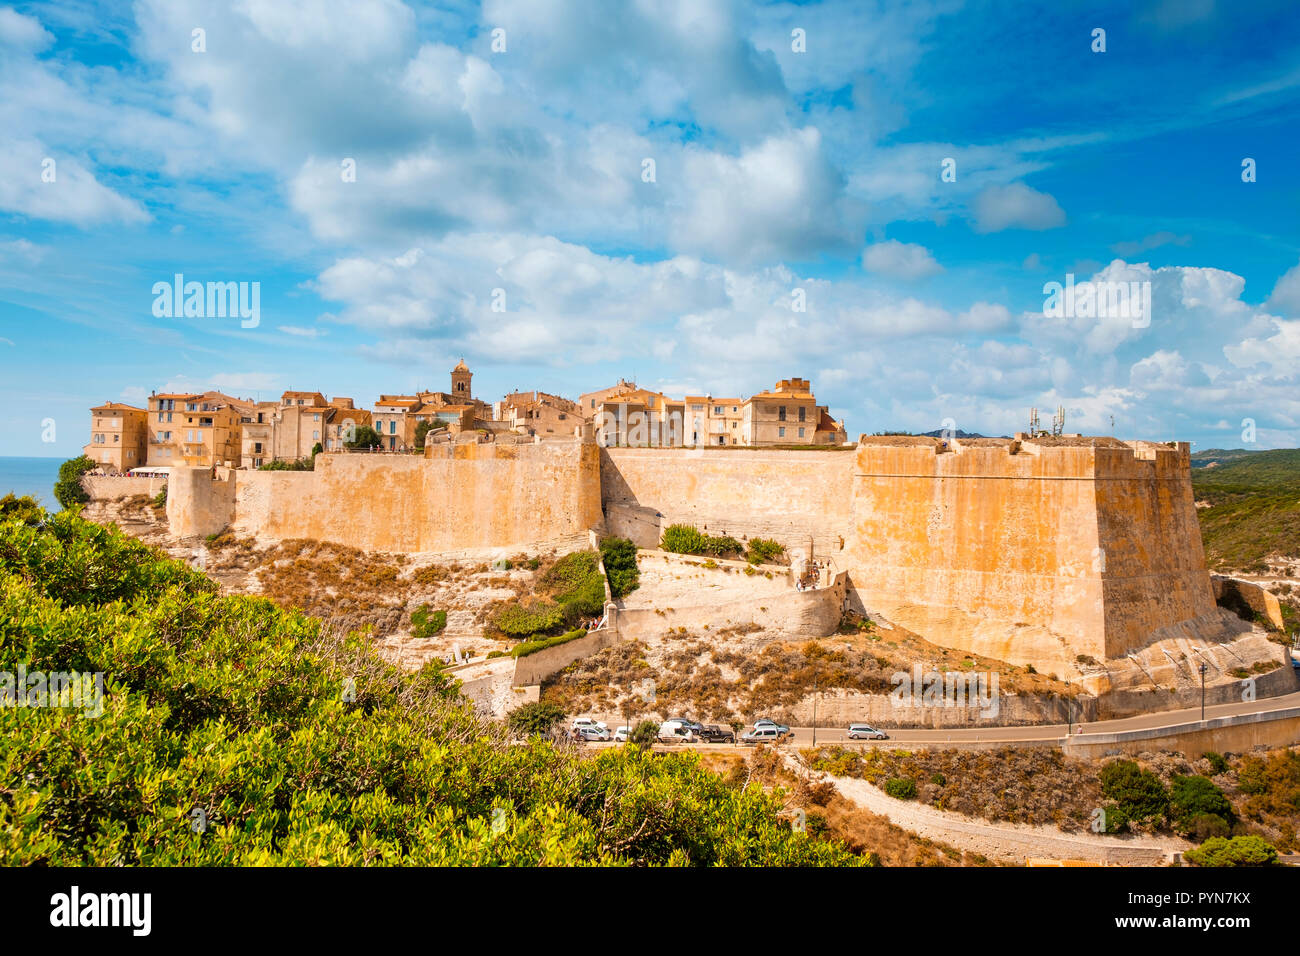 Une vue sur la pittoresque citadelle de Bonifacio, en Corse, en France, sur le sommet d'un promontoire, avec la mer Méditerranée en arrière-plan Banque D'Images